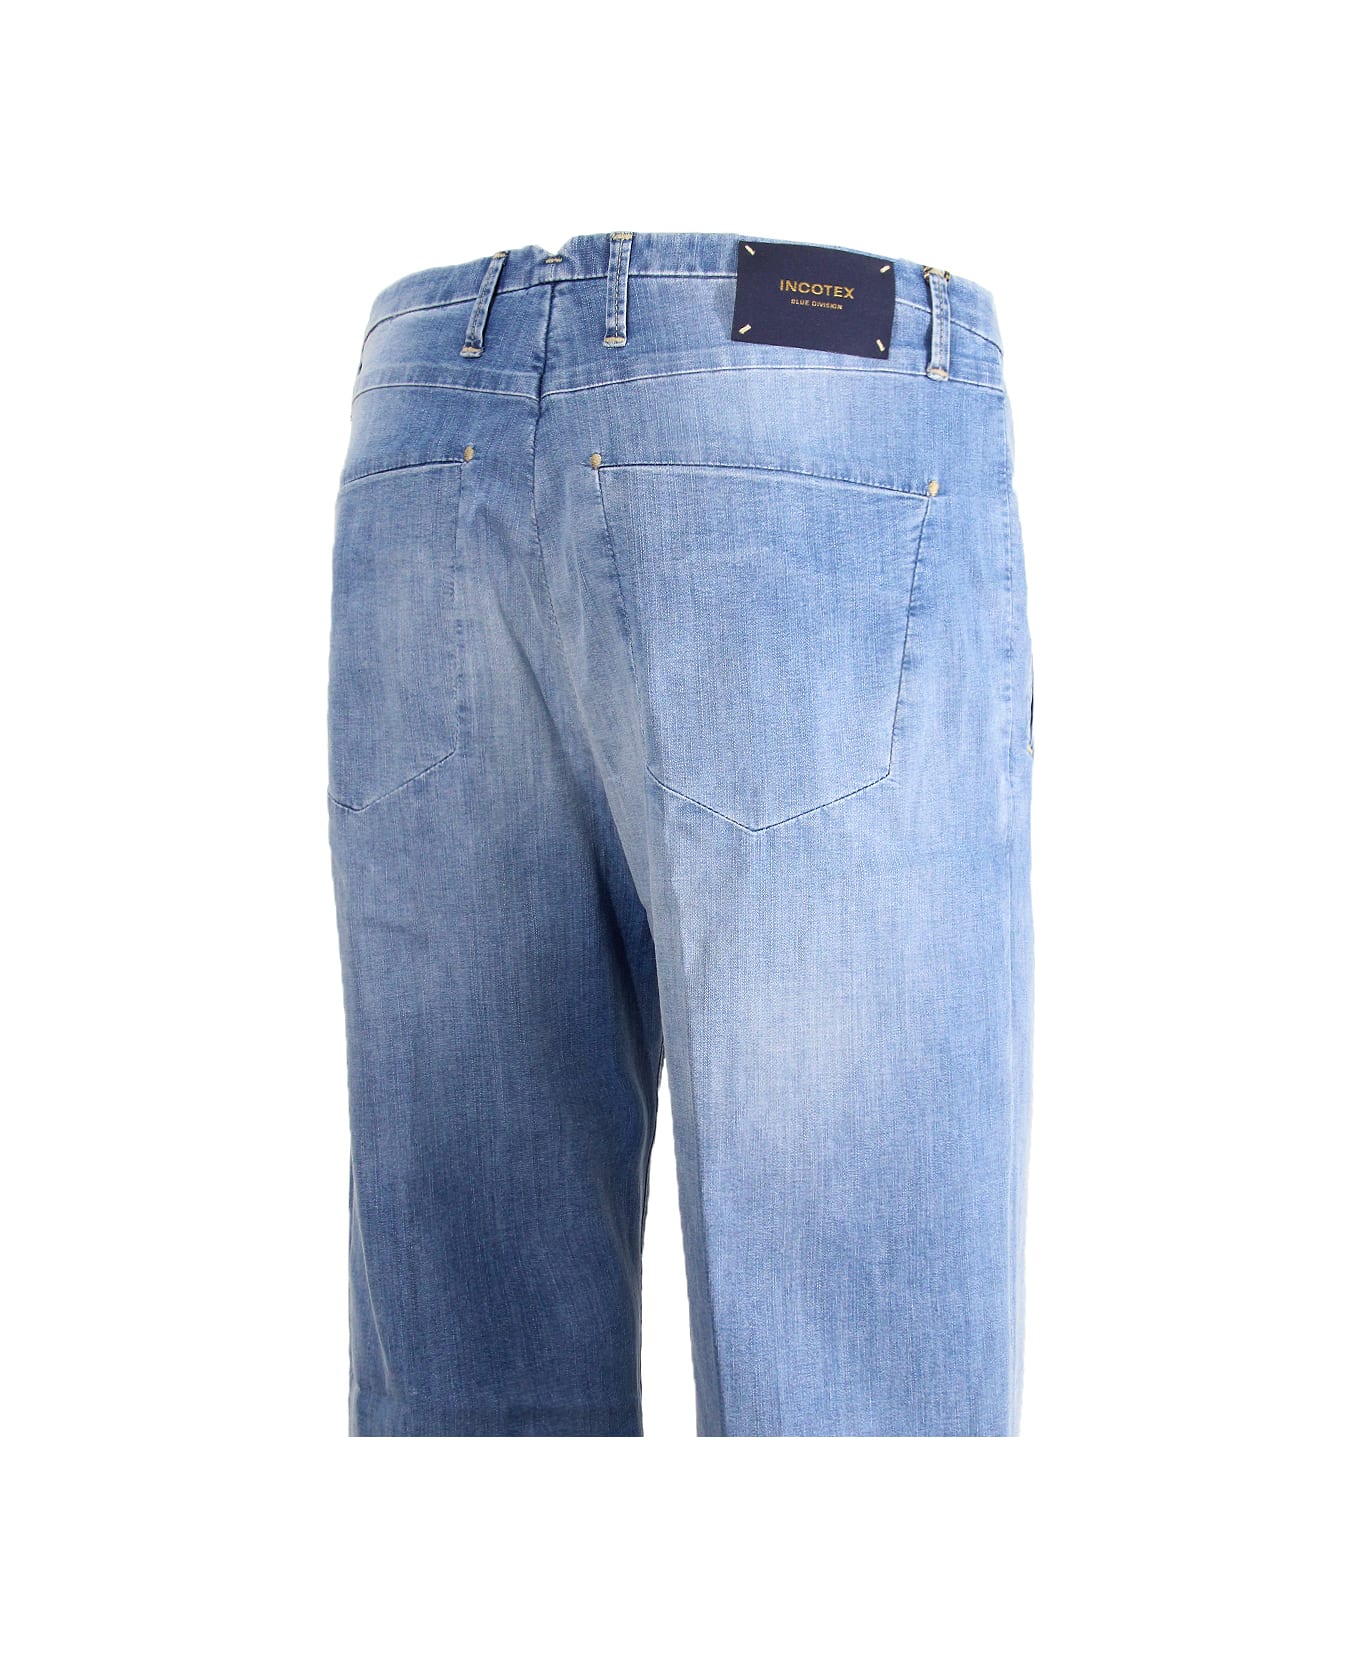 Incotex Jeans Incotex Blue Division - Clear Blue デニム